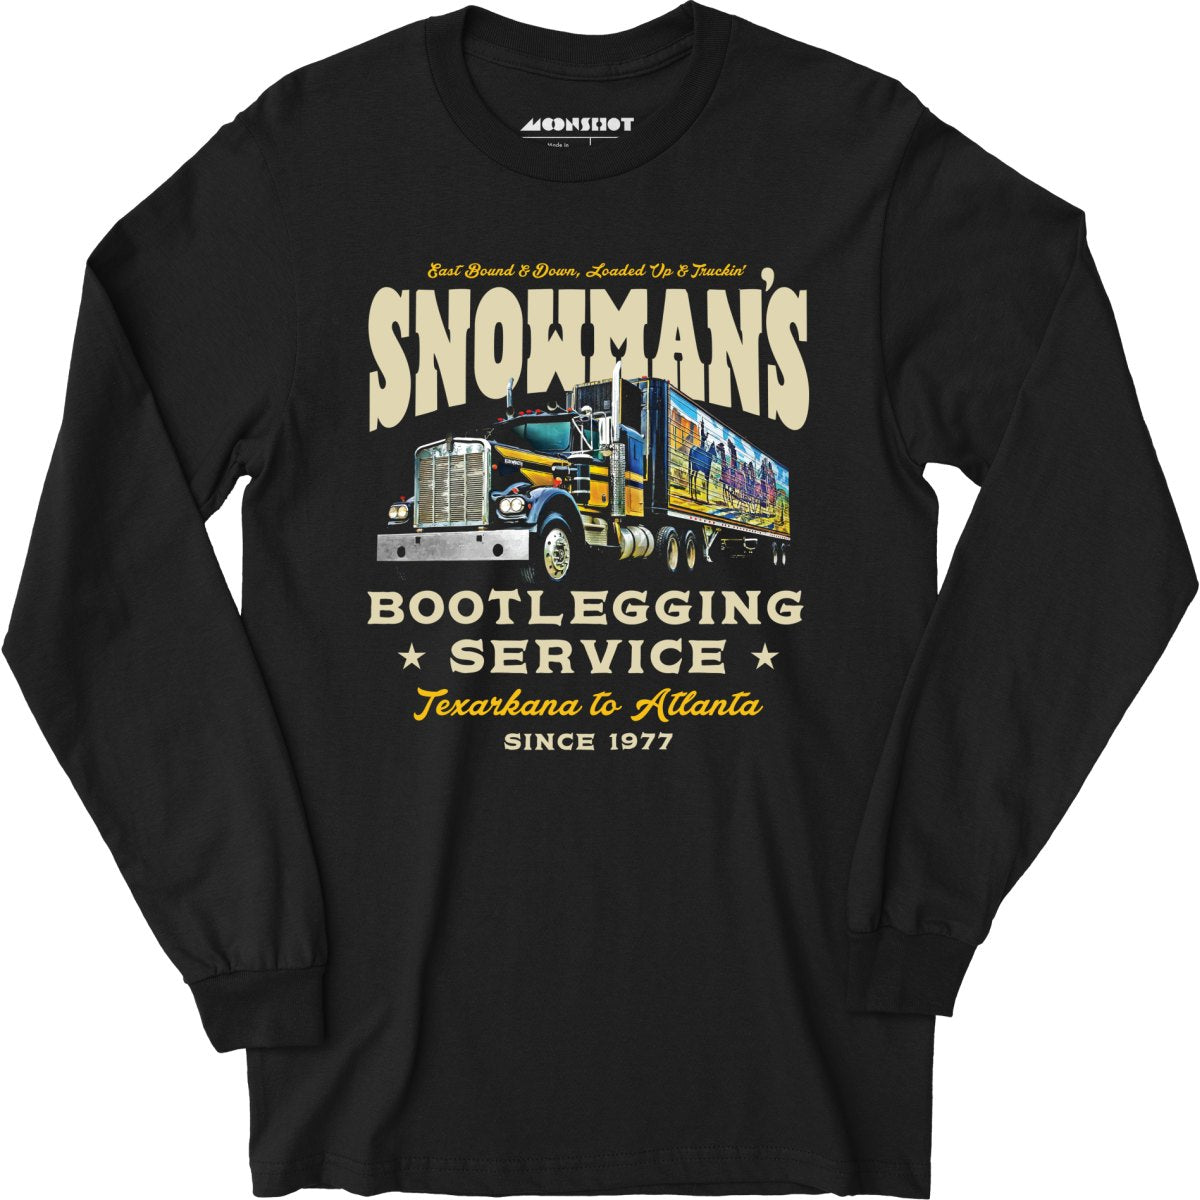 Snowman's Bootlegging Service - Long Sleeve T-Shirt